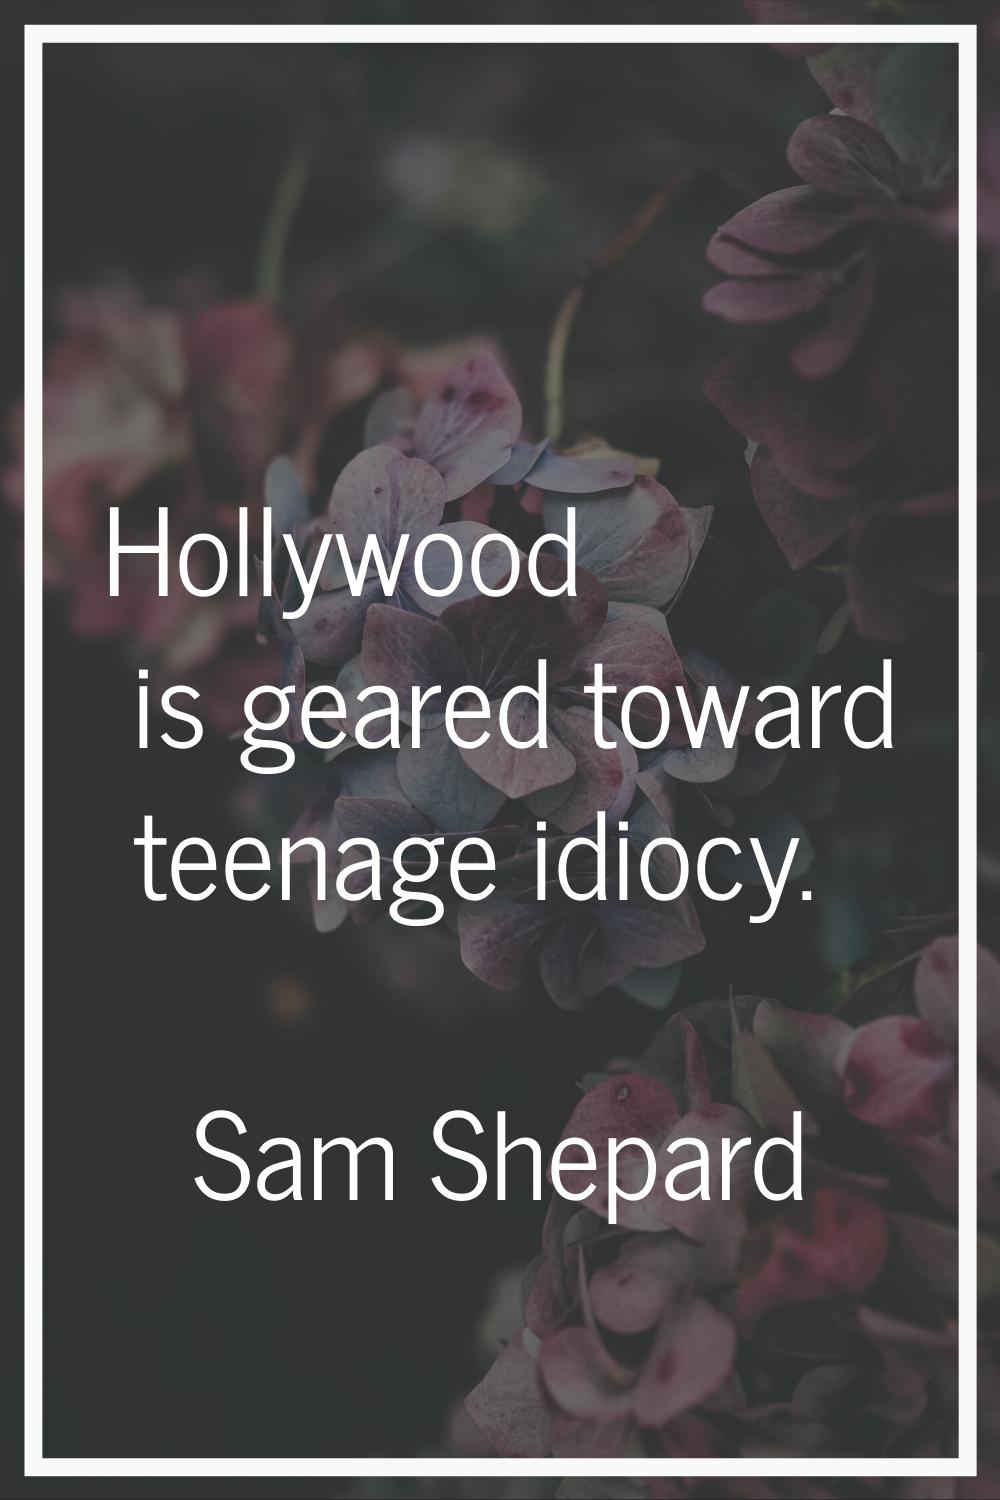 Hollywood is geared toward teenage idiocy.